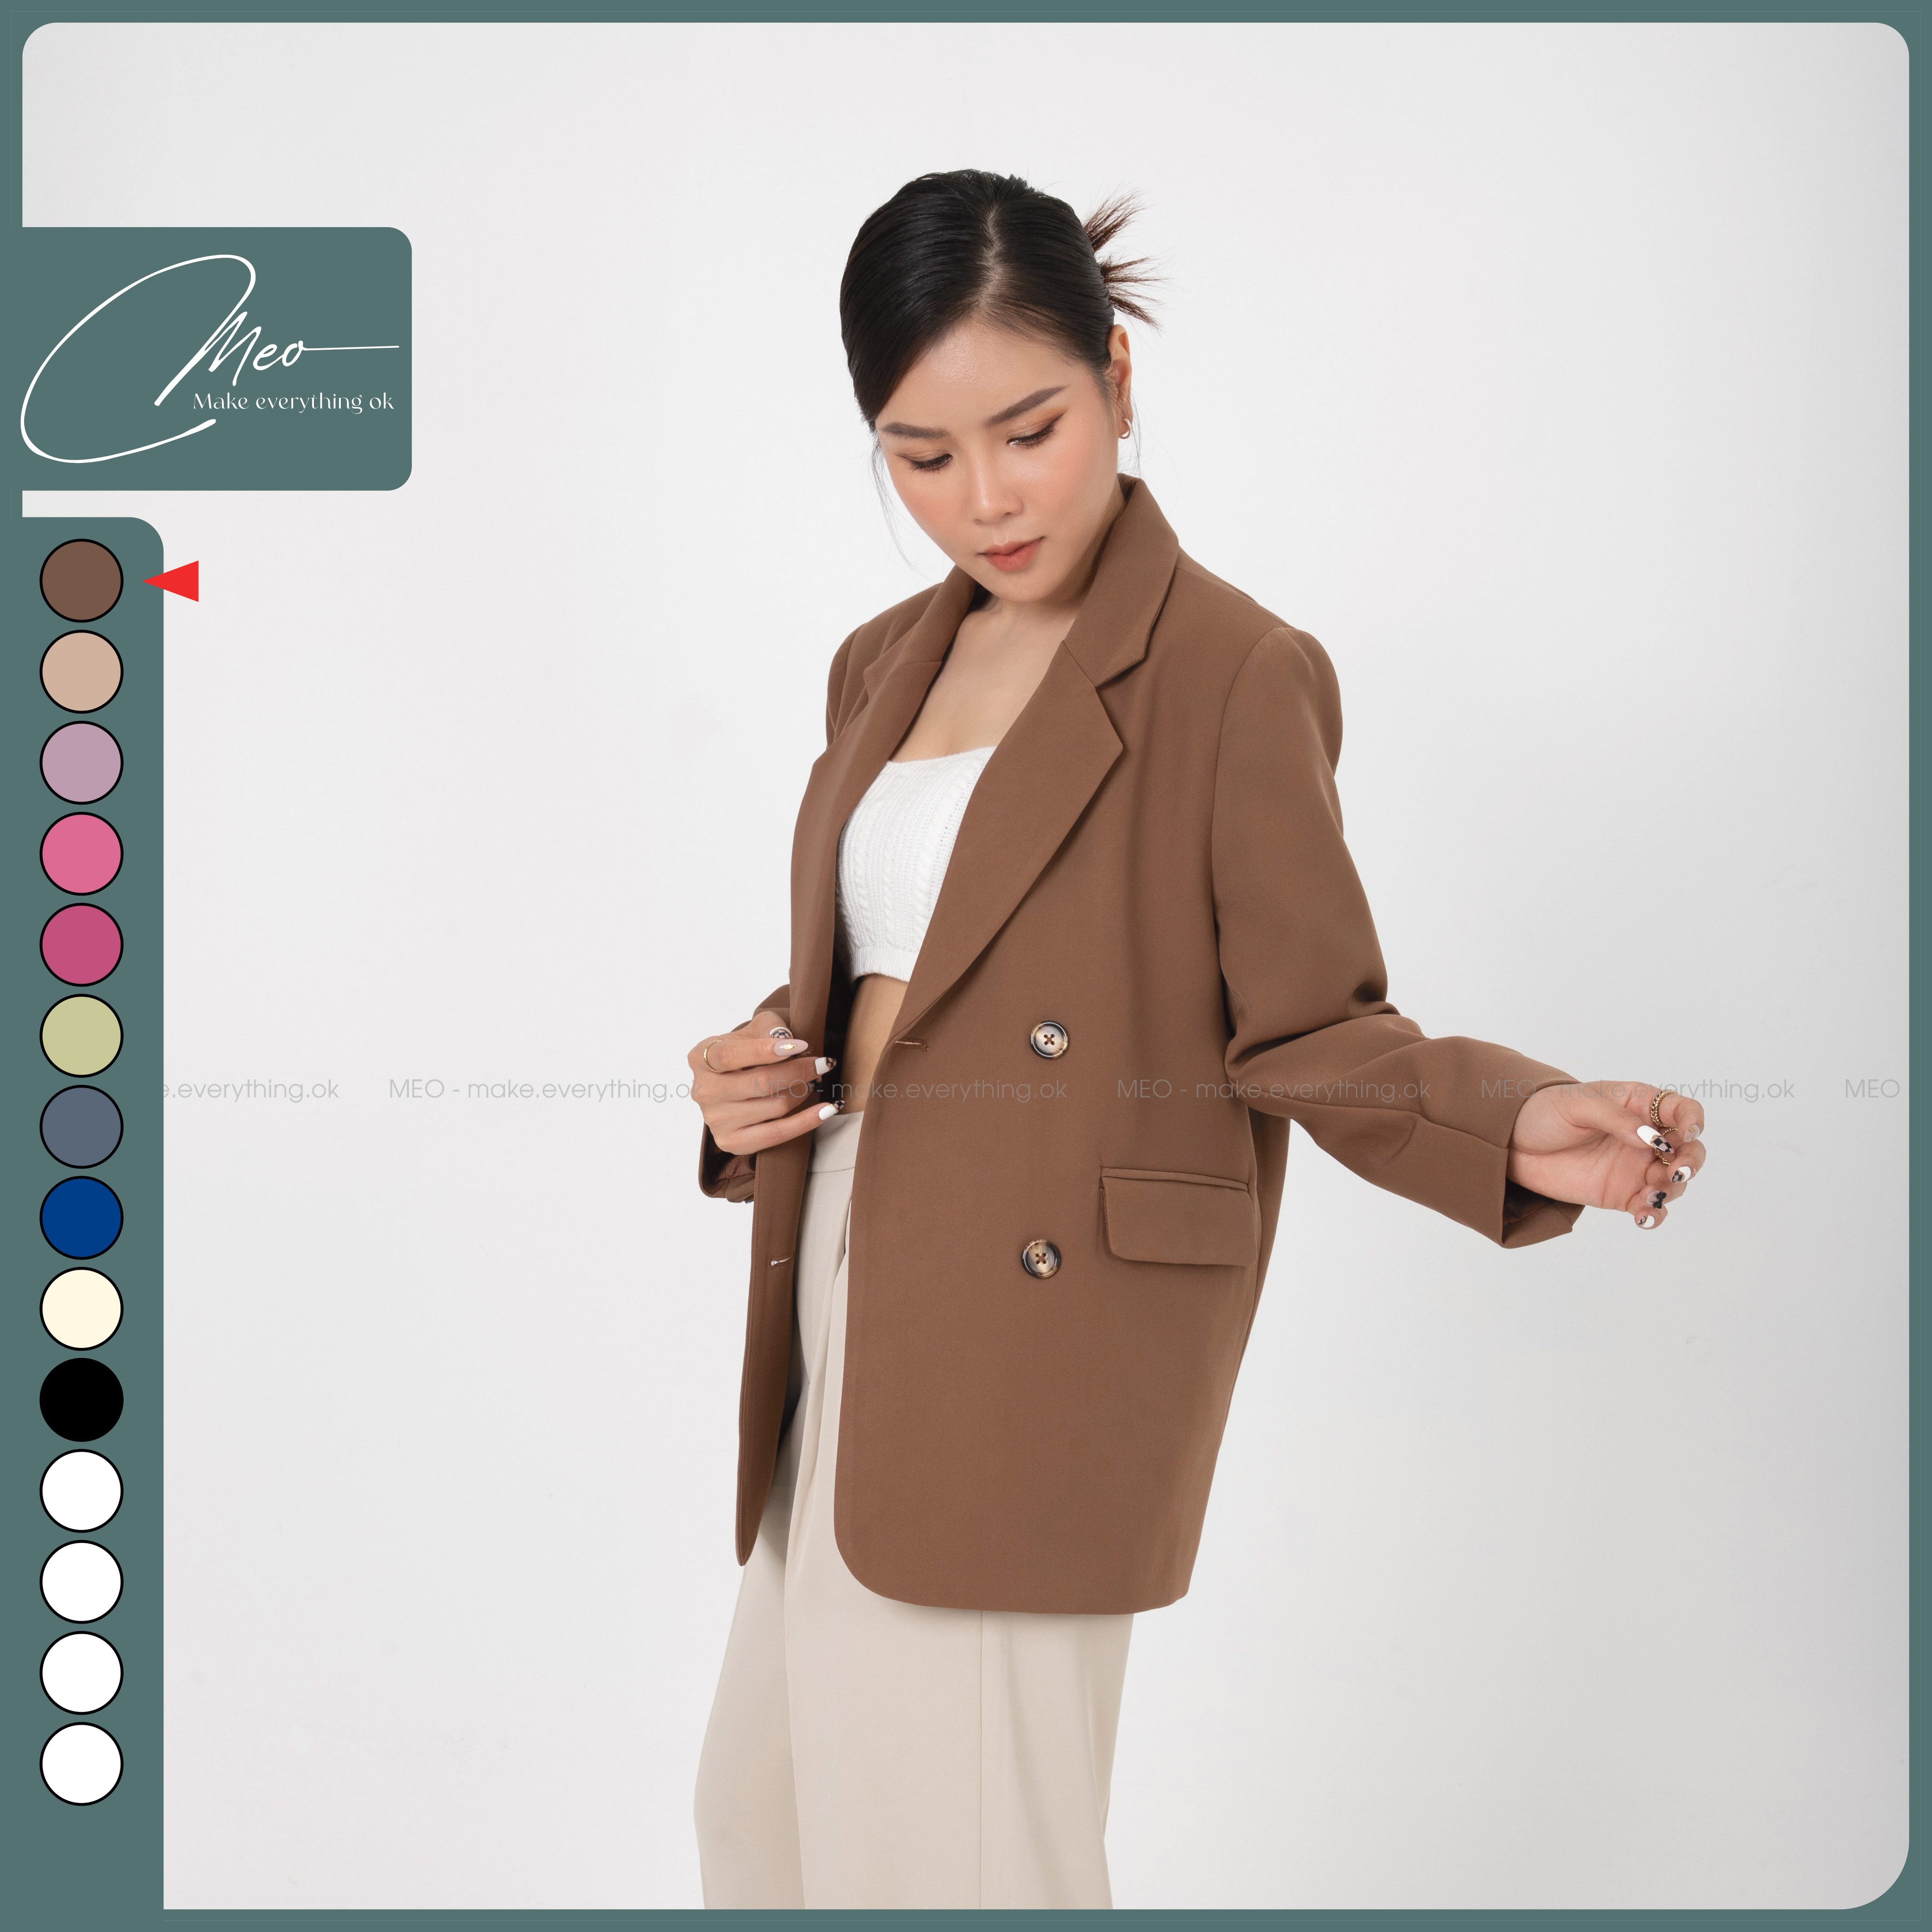 Áo vest blazer Linen nữ dáng lửng tay chun túi nắp ArcticHunter chất vải  linen tự nhiên mềm mại thời trang trẻ thương hiệu chính hãng giá rẻ nhất  tháng 82023